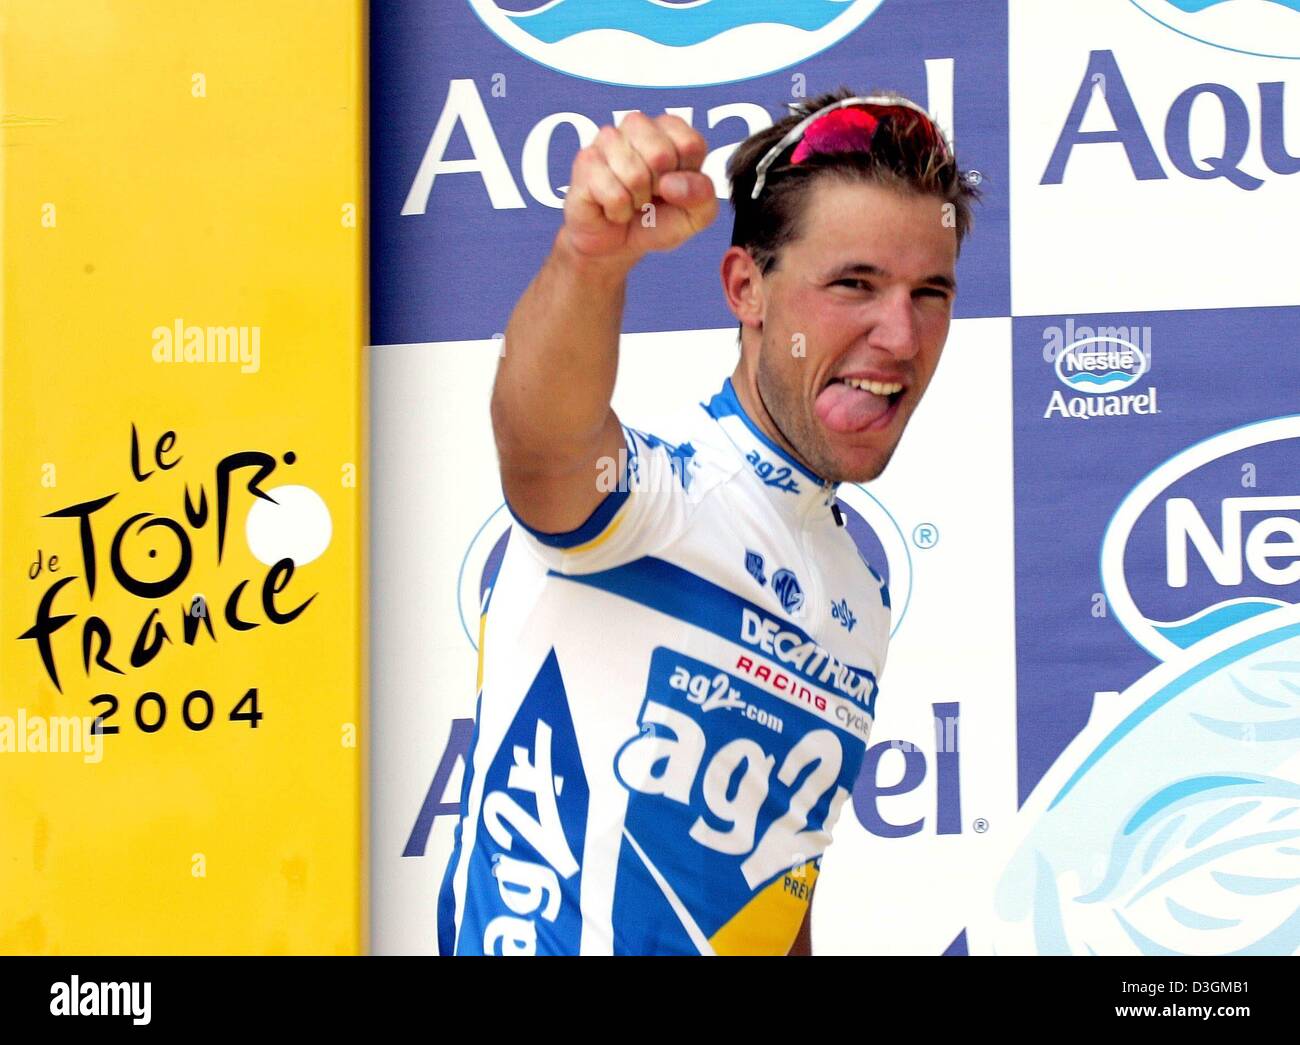 Afp) - Le Français Jean-Patrick Nazon cycliste de l'équipe AG2R à la vôtre  sur le podium après avoir remporté la 3ème étape du 91ème Tour de France à  Wasquehal, France, le 6